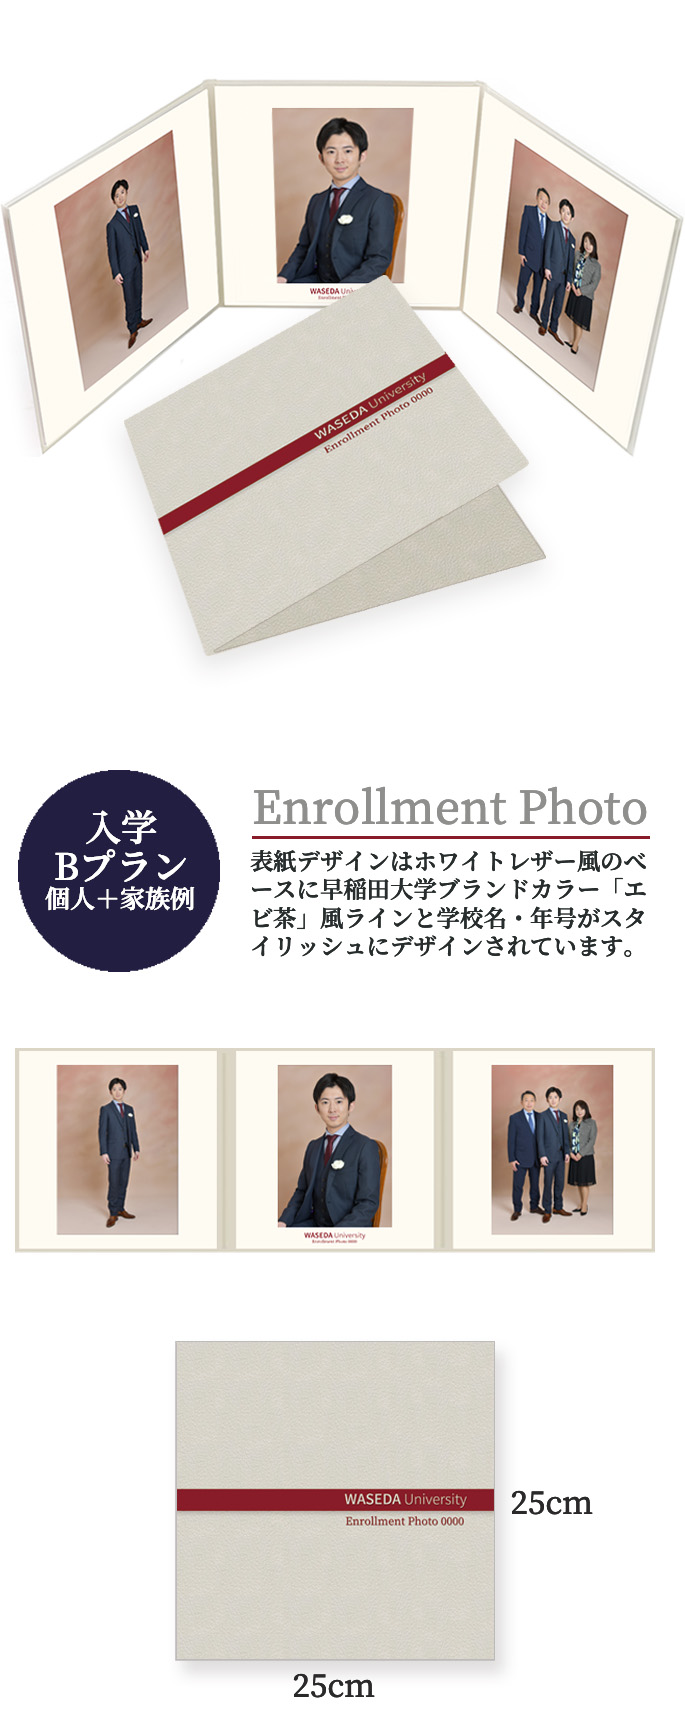 入学 Bプラン 個人＋家族例 Enrollment Photo 表紙デザインはホワイトレザー風のベースに早稲田大学ブランドカラー「エビ茶」風ラインと学校名・年号がスタイリッシュにデザインされています。